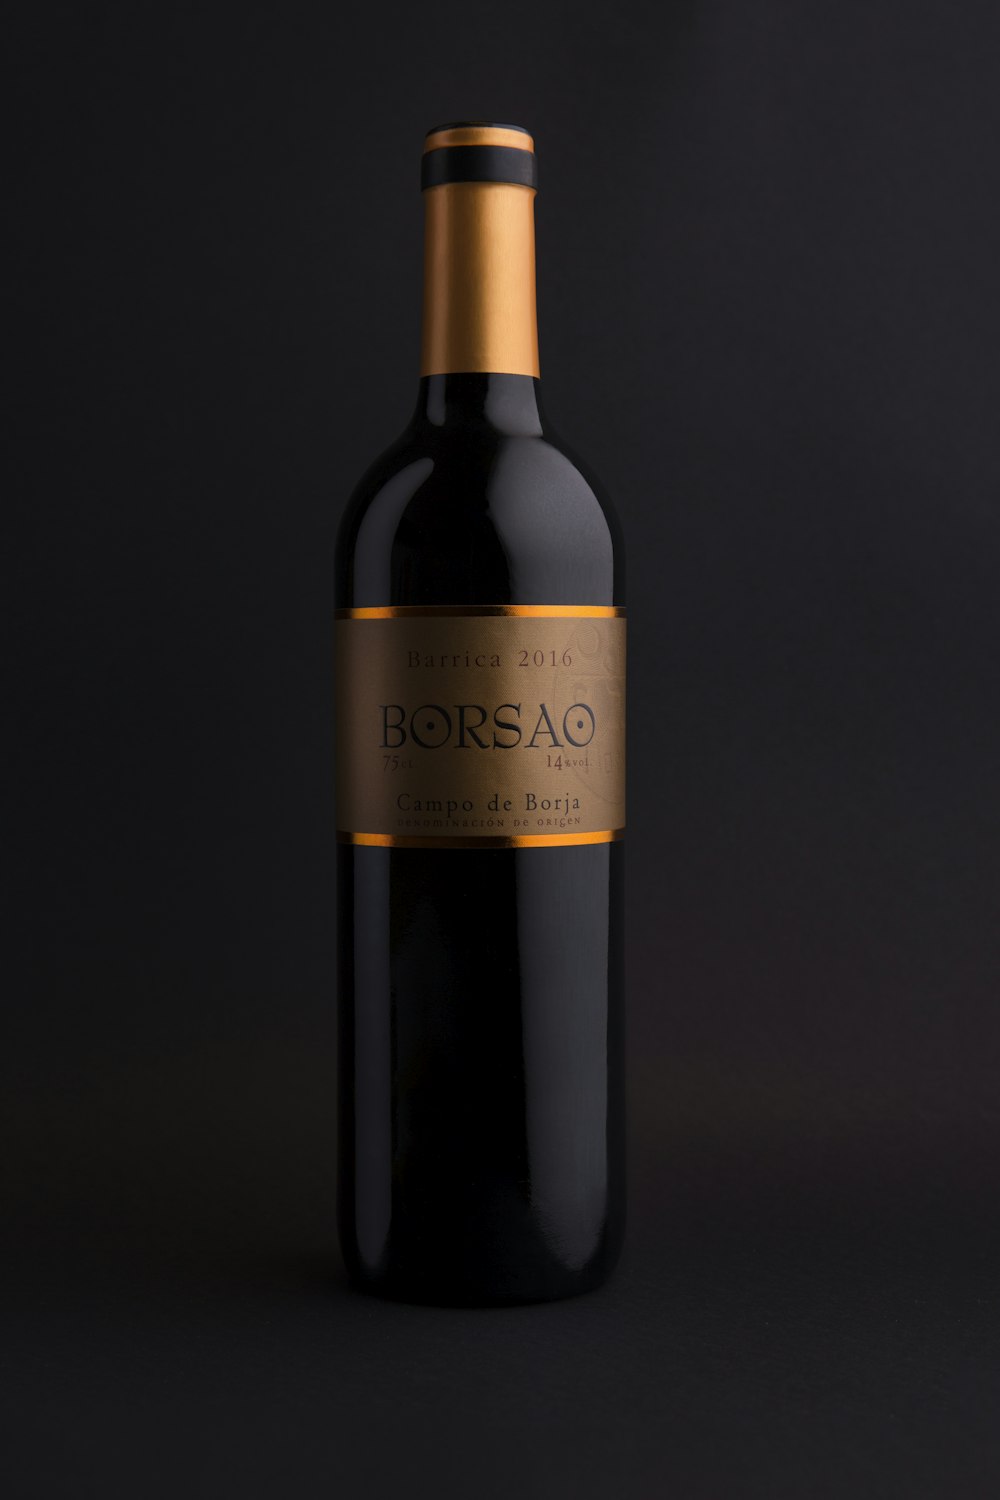 2014 Borsao wine bottle